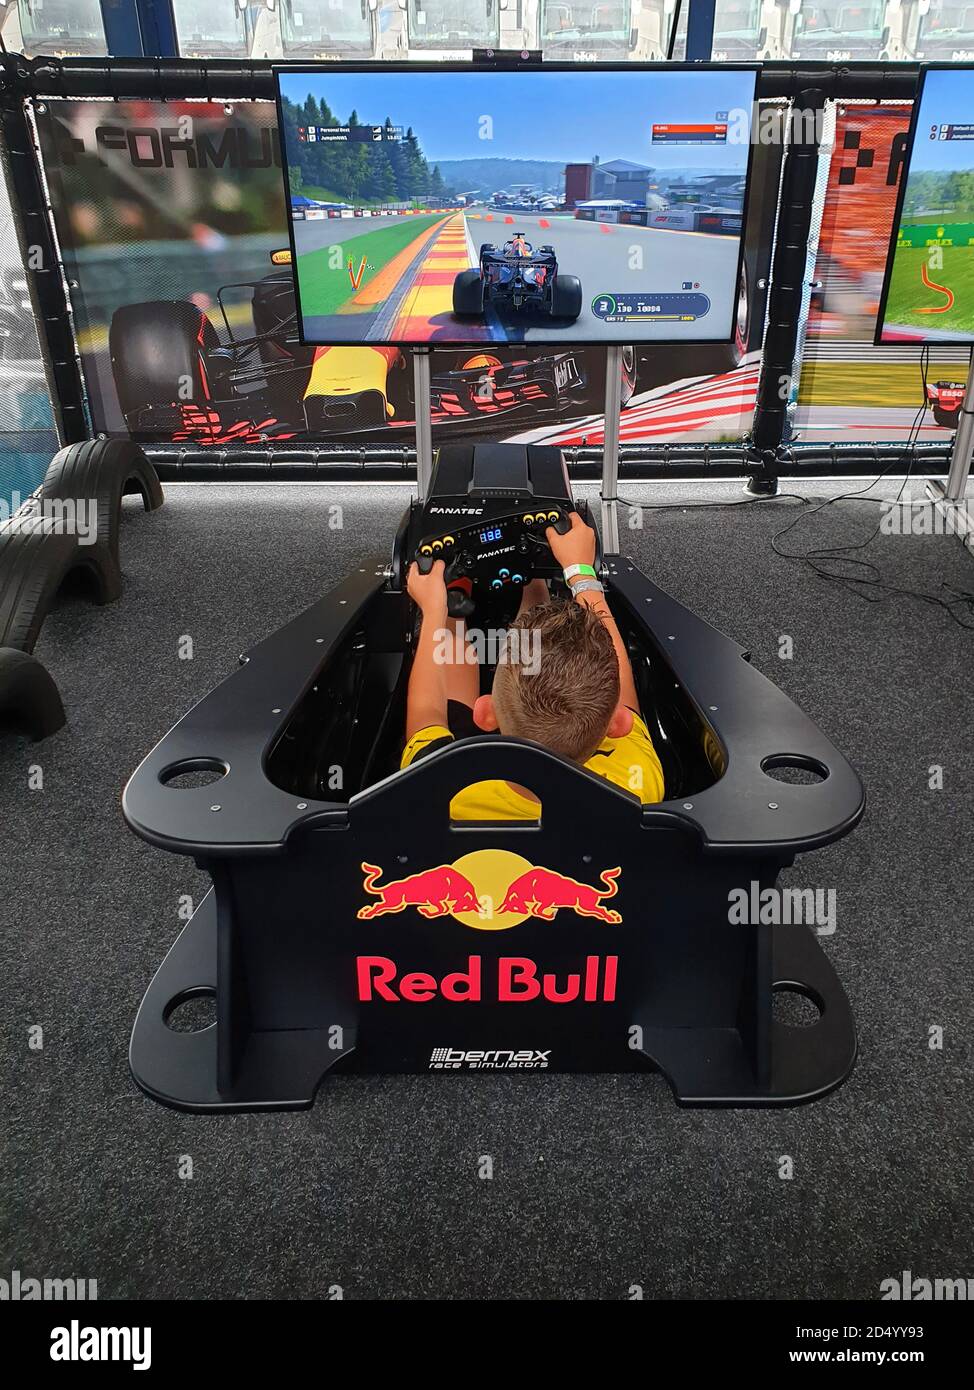 Garçon dans un simulateur de course, Allemagne Banque D'Images